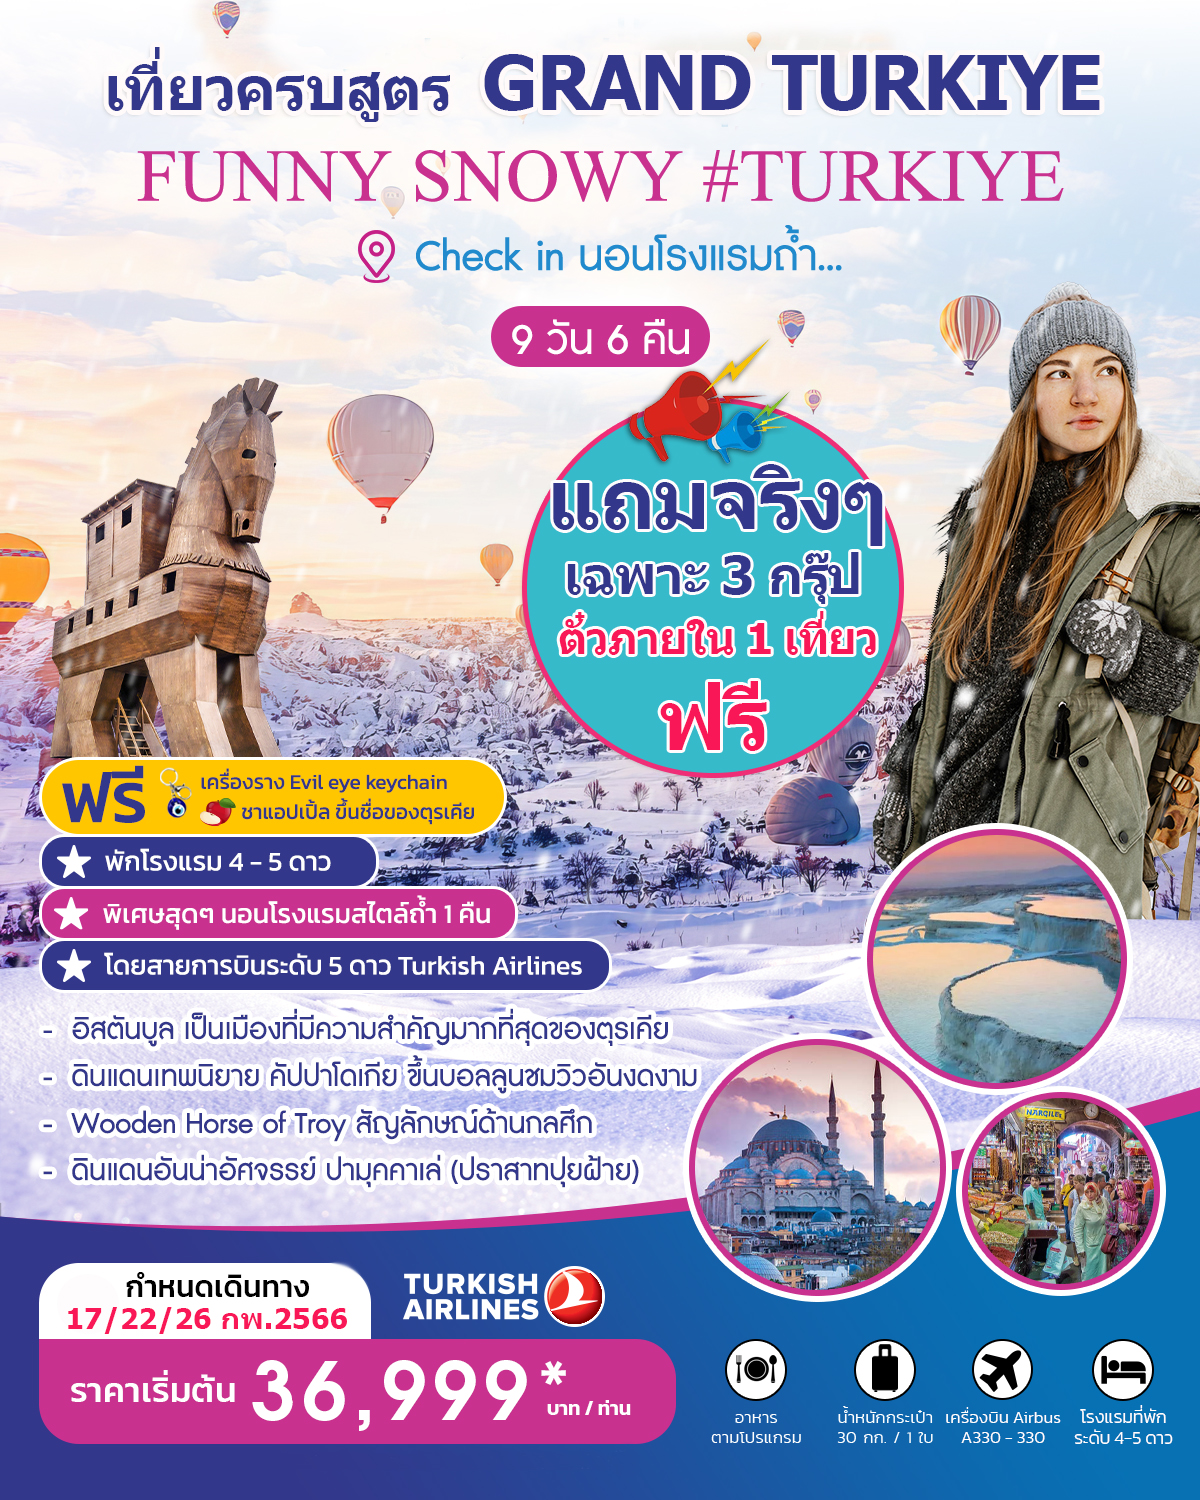 เที่ยวครบสูตร GRAND TURKIYE FUNNY SNOWY PRO แถมตั๋วภายใน